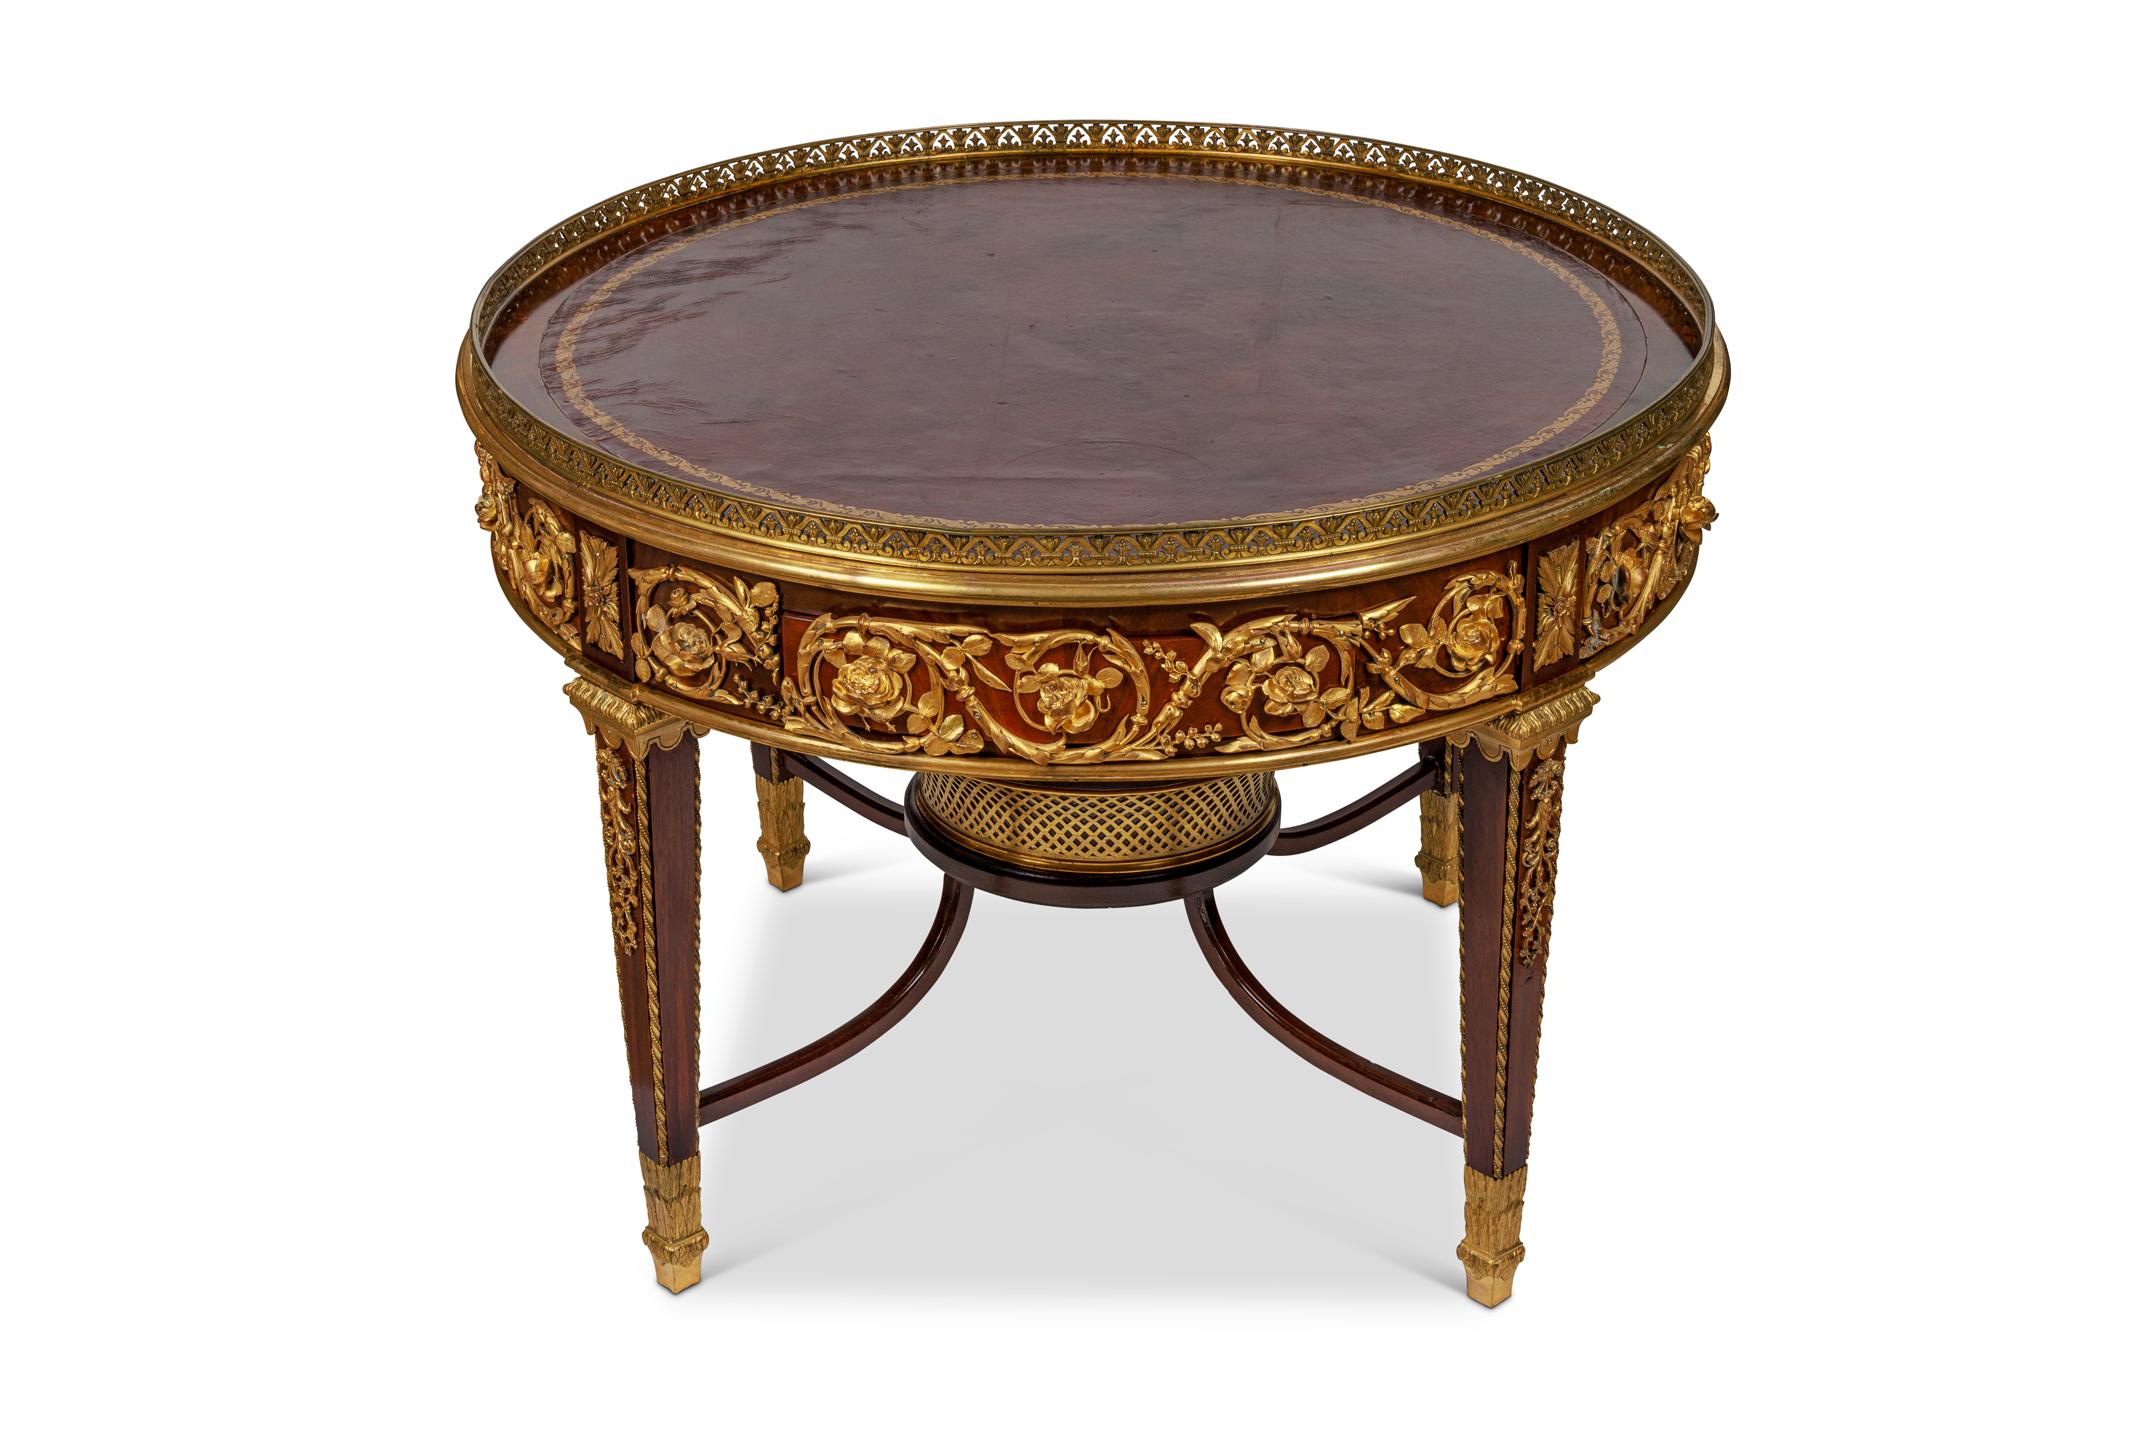 Table basse de style Louis XVI en acajou et cuir, attribuée à François Linke, Paris, vers 1880.

Les montures en bronze doré sont d'une qualité exceptionnelle. 

Dispose de deux tiroirs et de deux glissières. Le centre inférieur comporte une